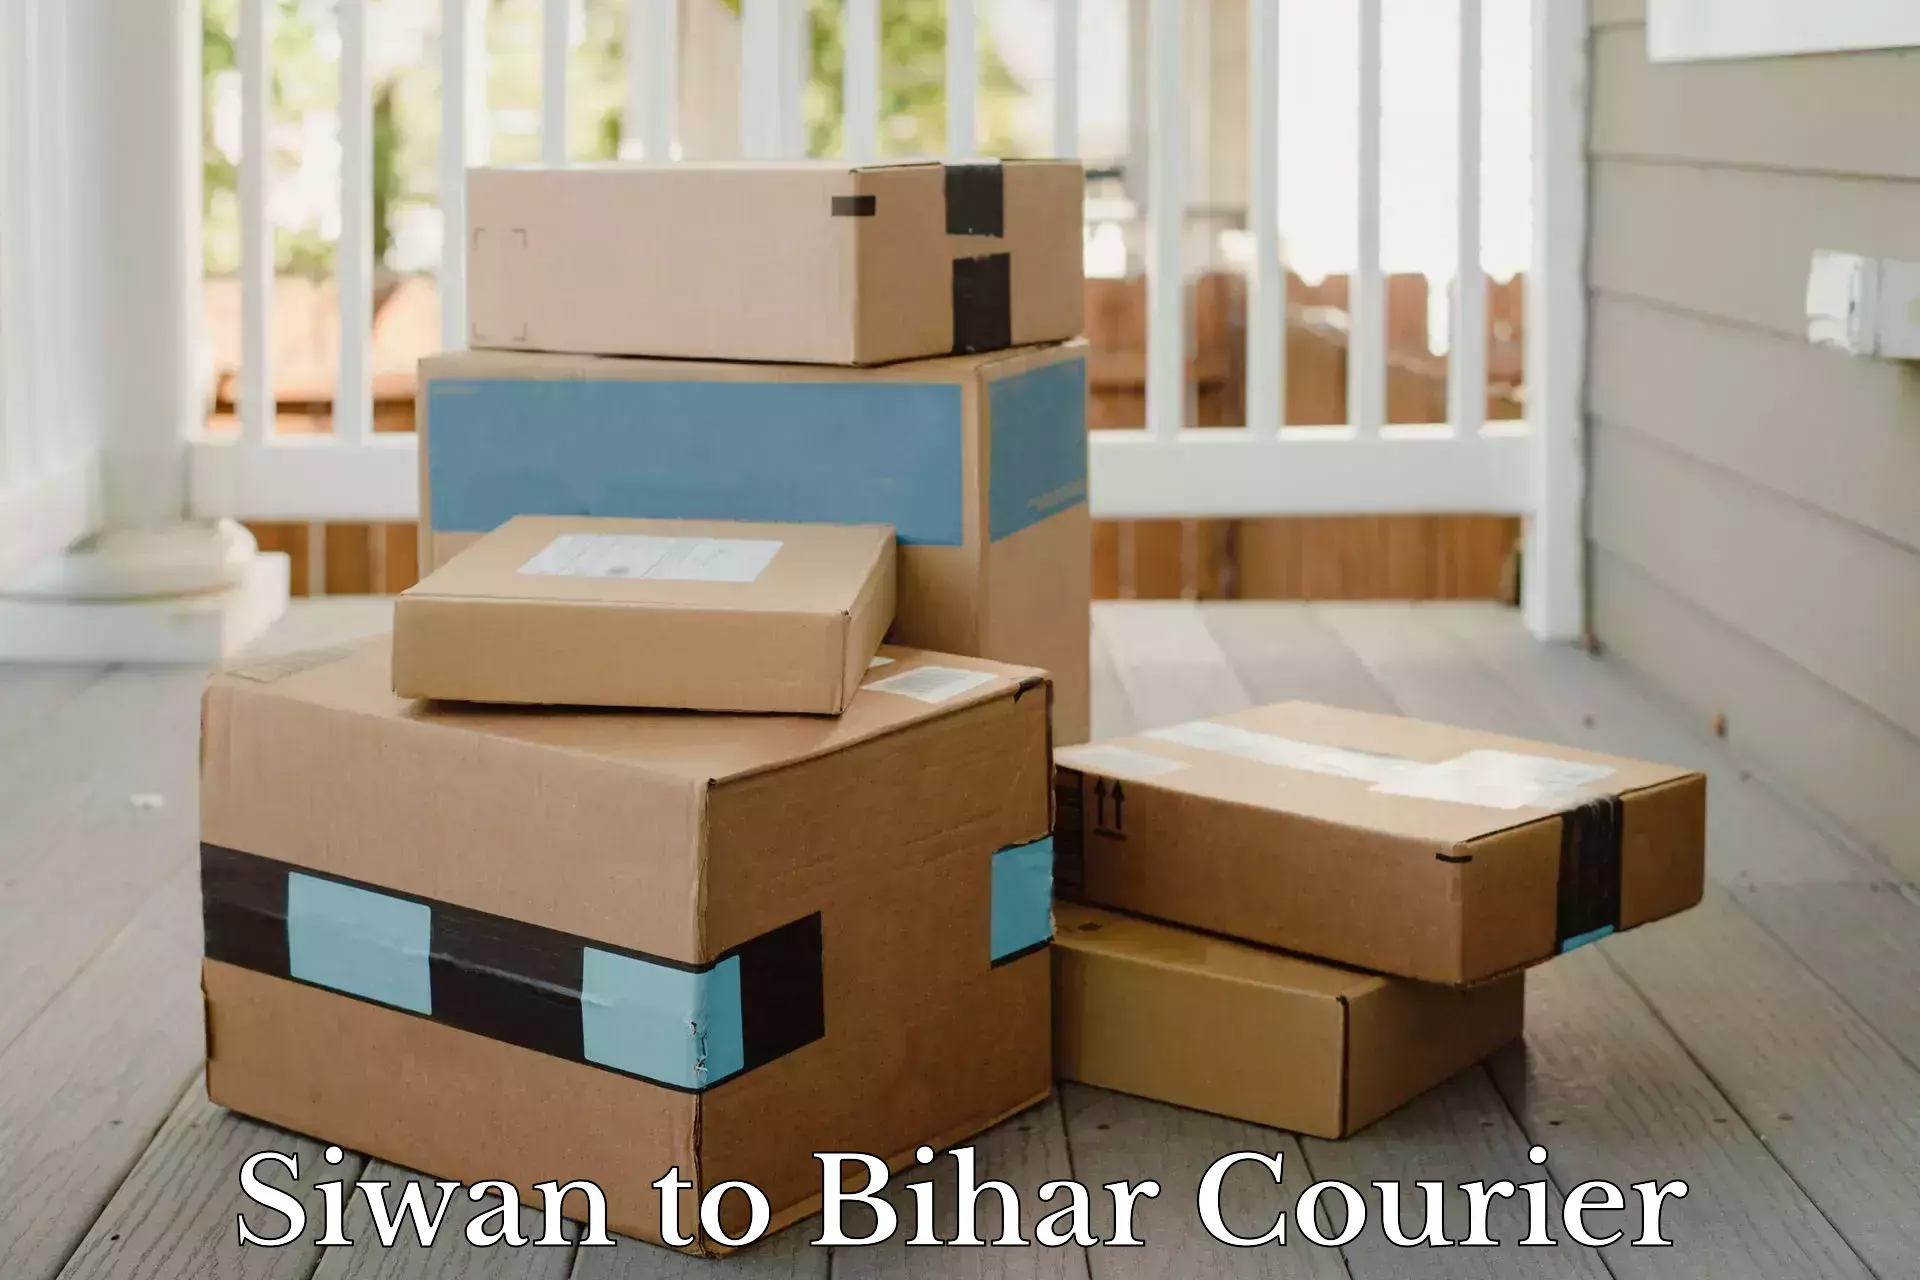 Affordable parcel service Siwan to Bikramganj